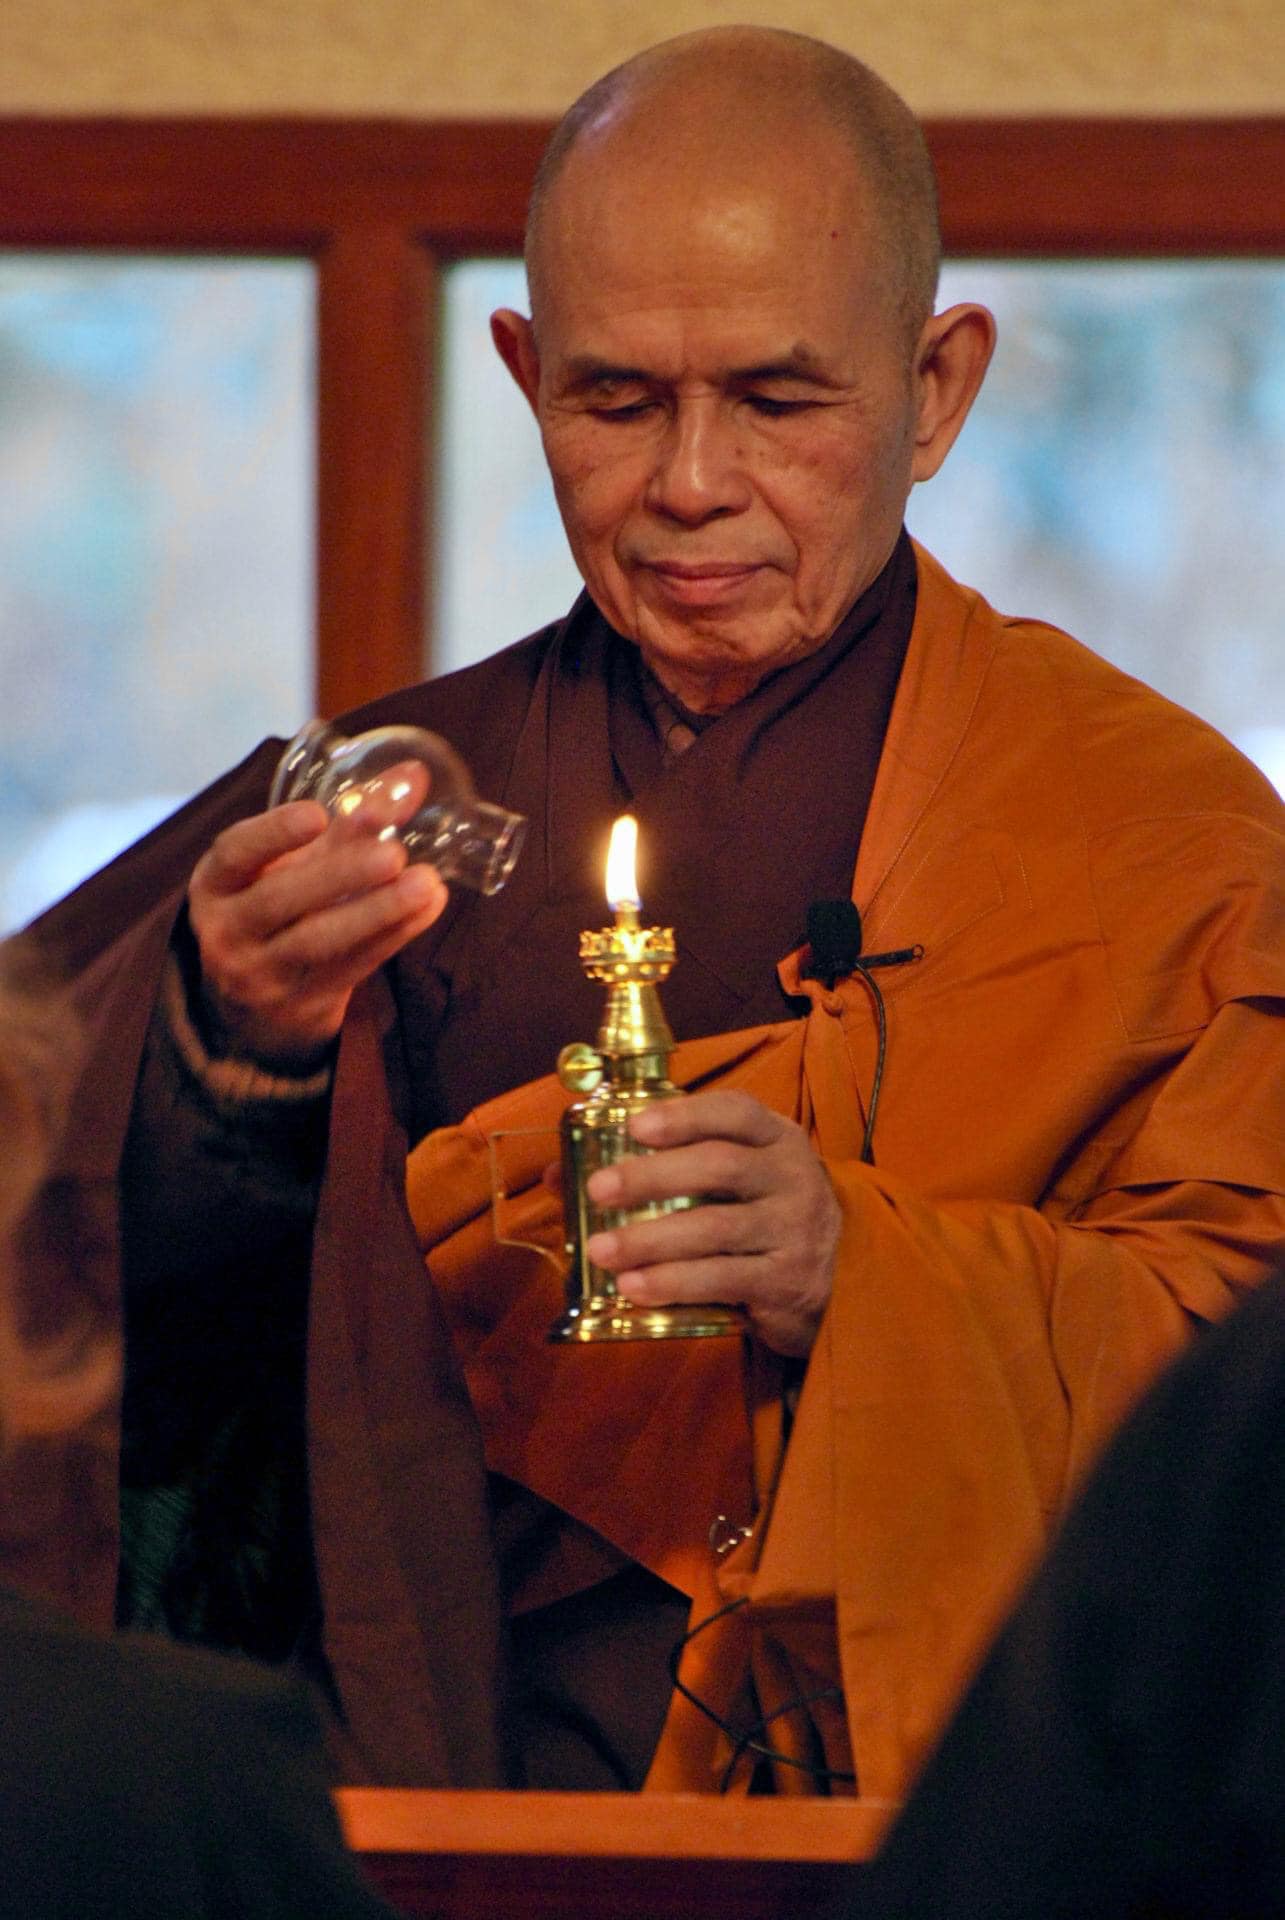 Thiền sư Thích Nhất Hạnh đã viên tịch vào lúc 0:00 ngày 22/1, tại Tổ đình Từ Hiếu, Huế